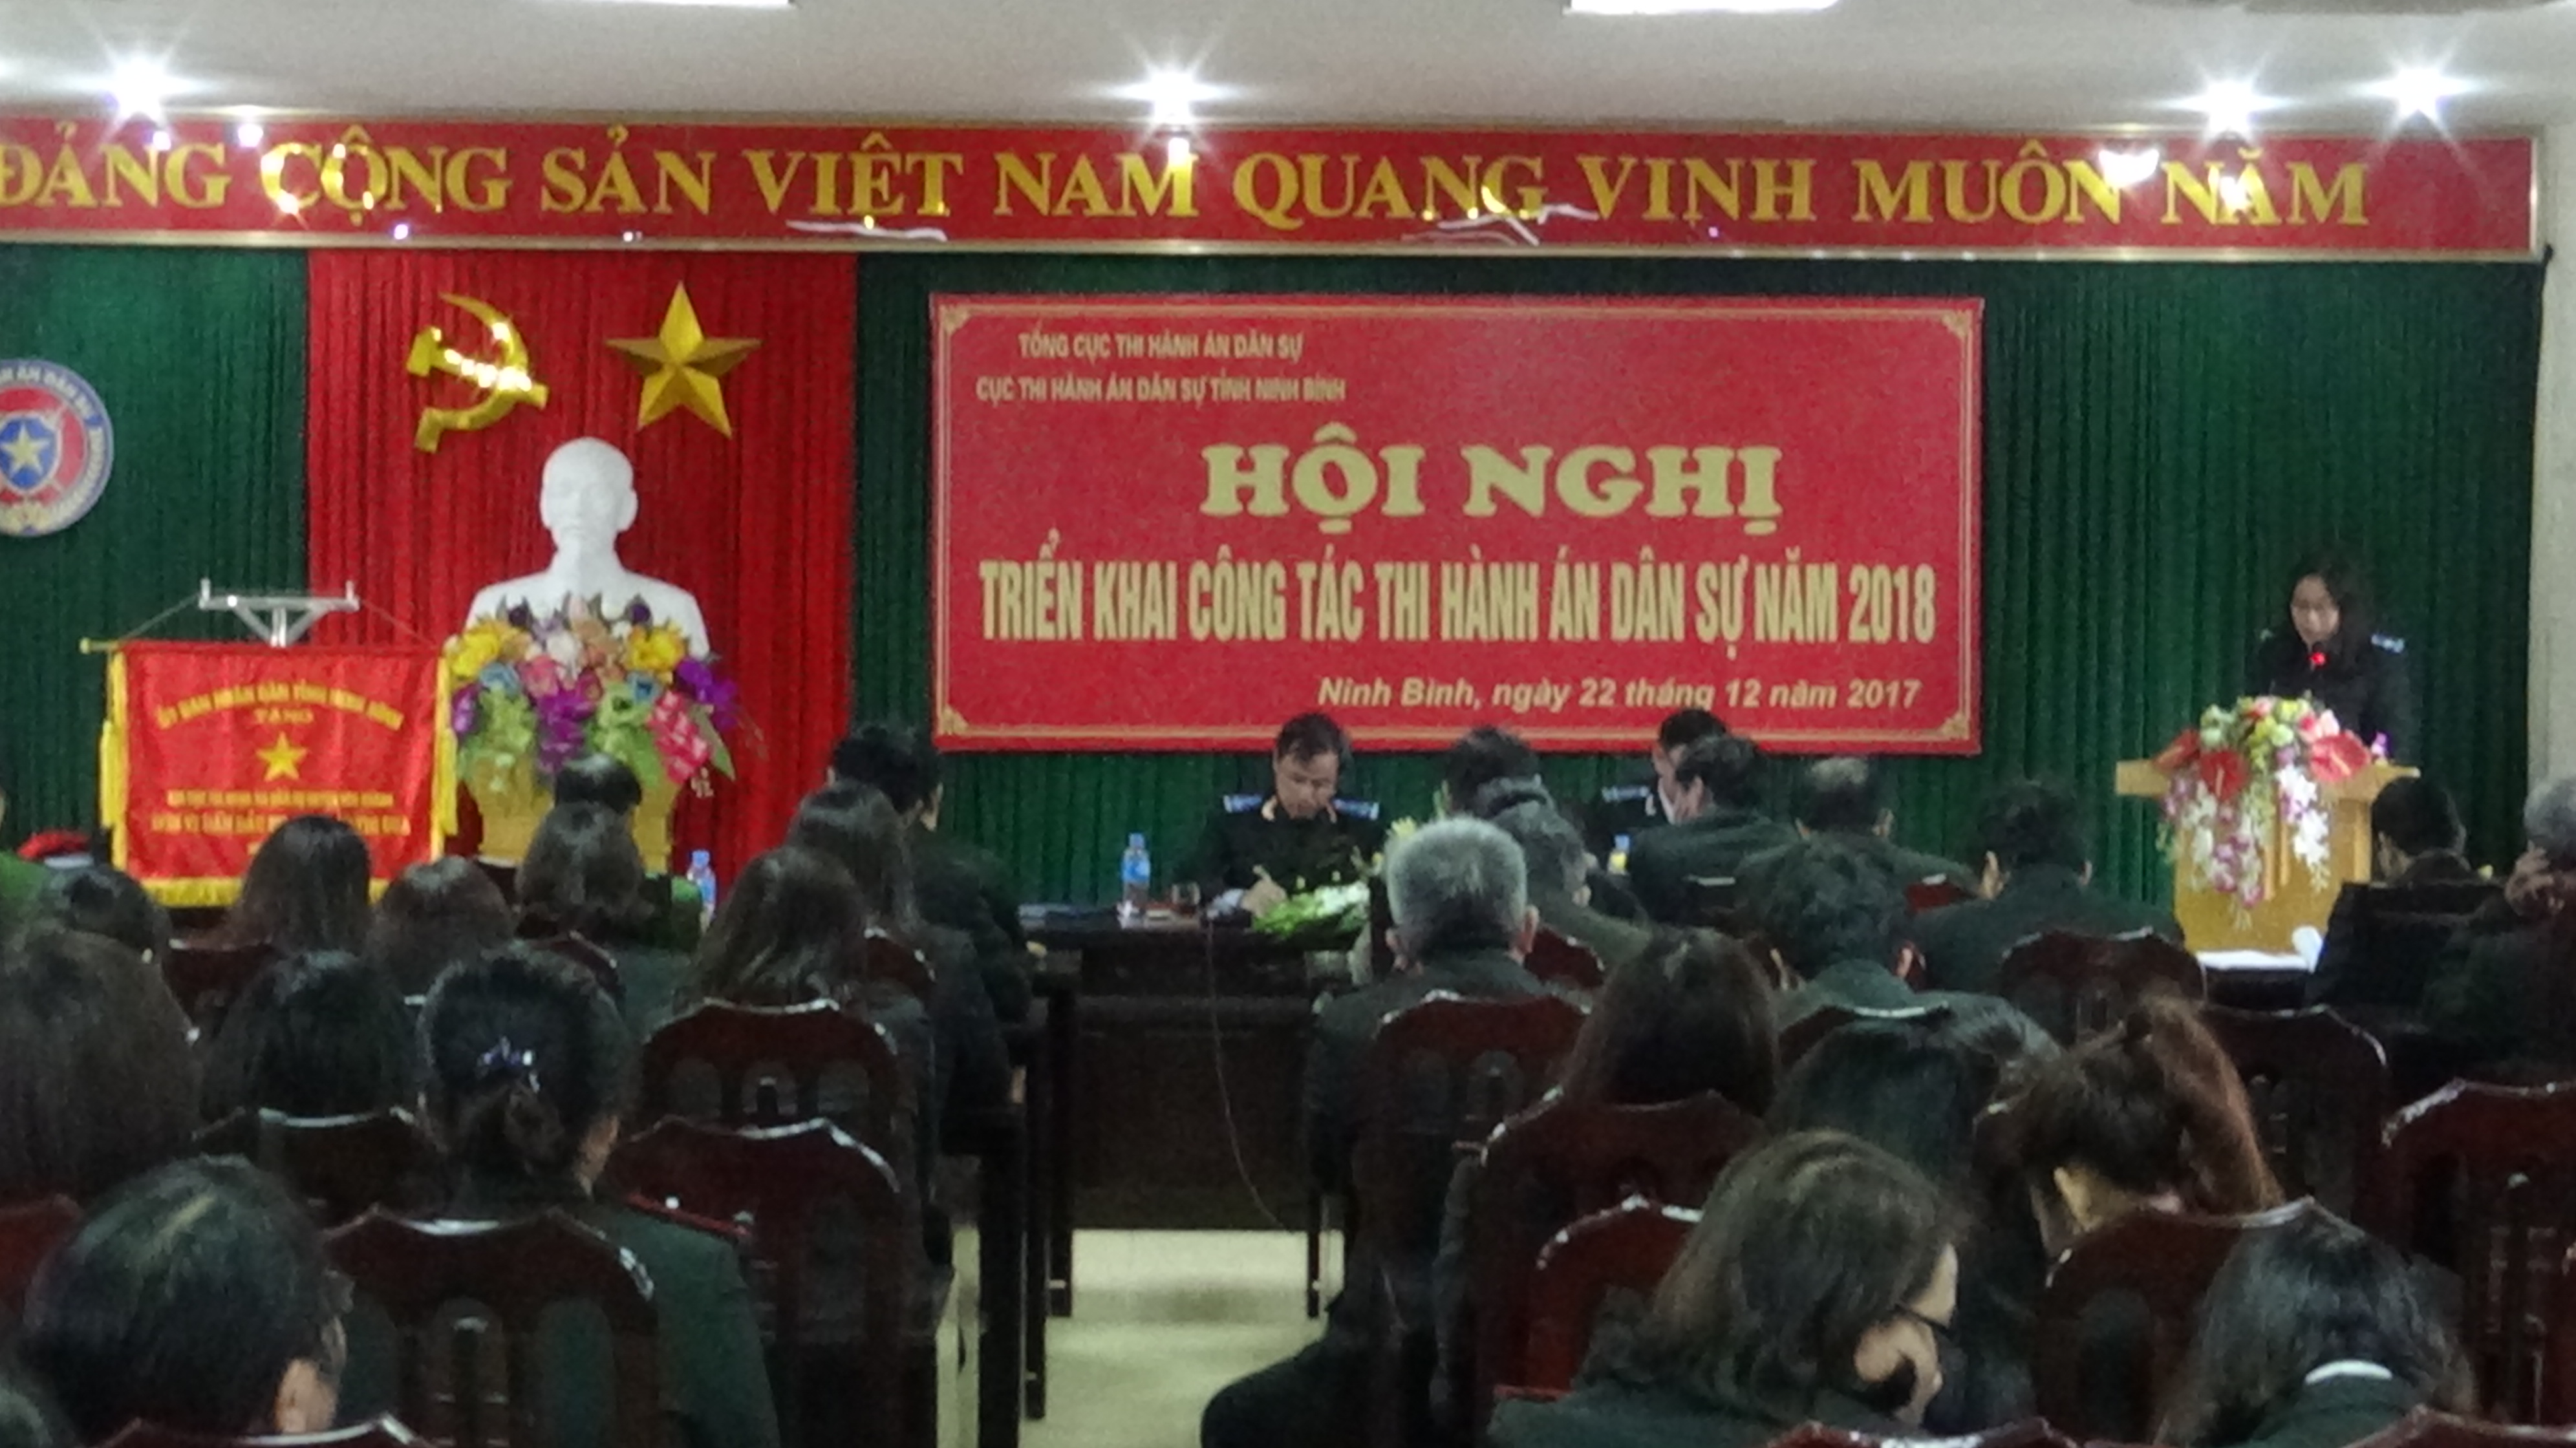 Cục Thi hành án dân sự tỉnh Ninh Bình tổ chức Hội nghị triển khai công tác thi hành án dân sự năm 2018